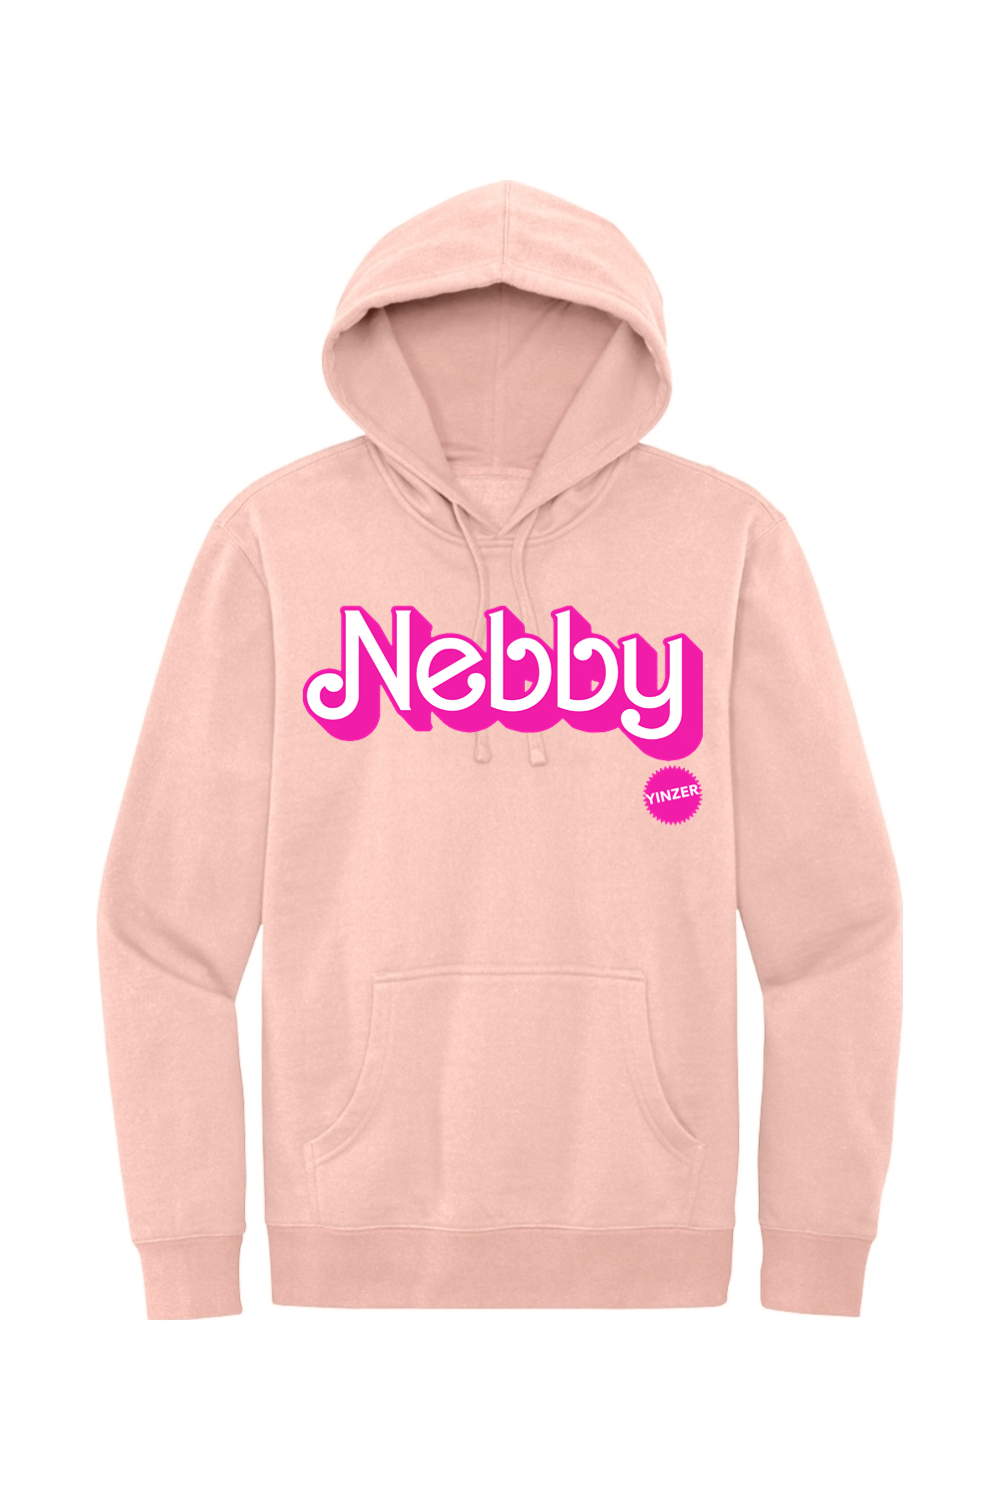 Malibu Nebby - Fleece Hoodie - Yinzylvania